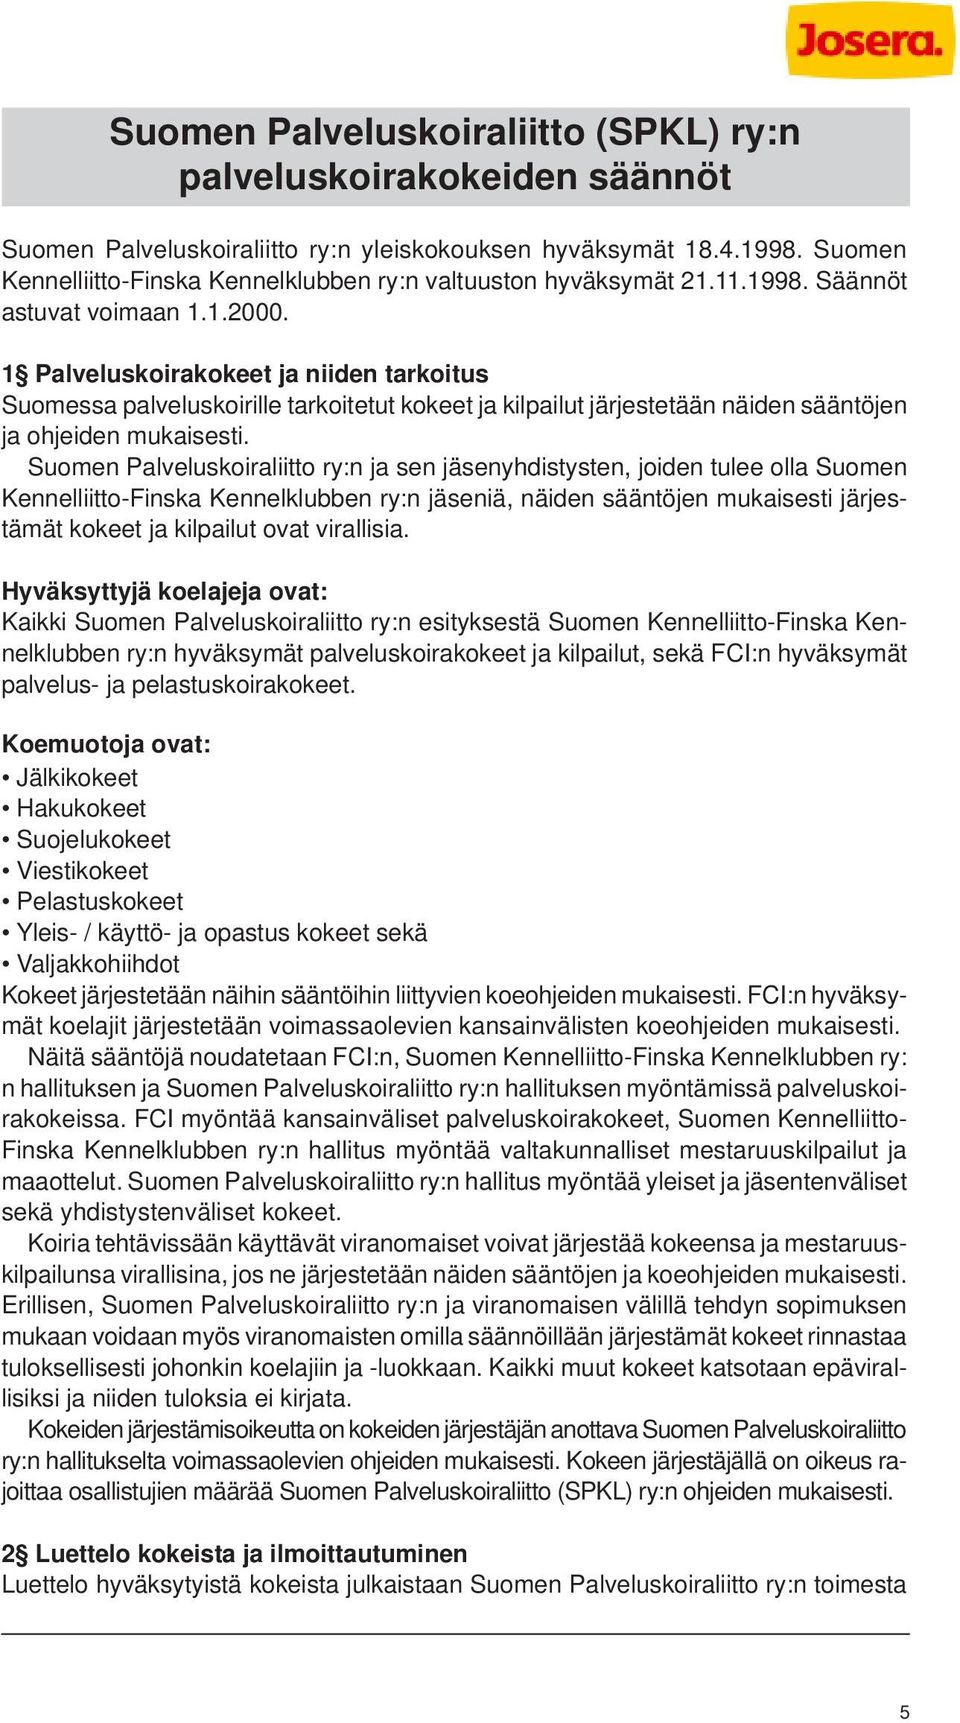 1 Palveluskoirakokeet ja niiden tarkoitus Suomessa palveluskoirille tarkoitetut kokeet ja kilpailut järjestetään näiden sääntöjen ja ohjeiden mukaisesti.